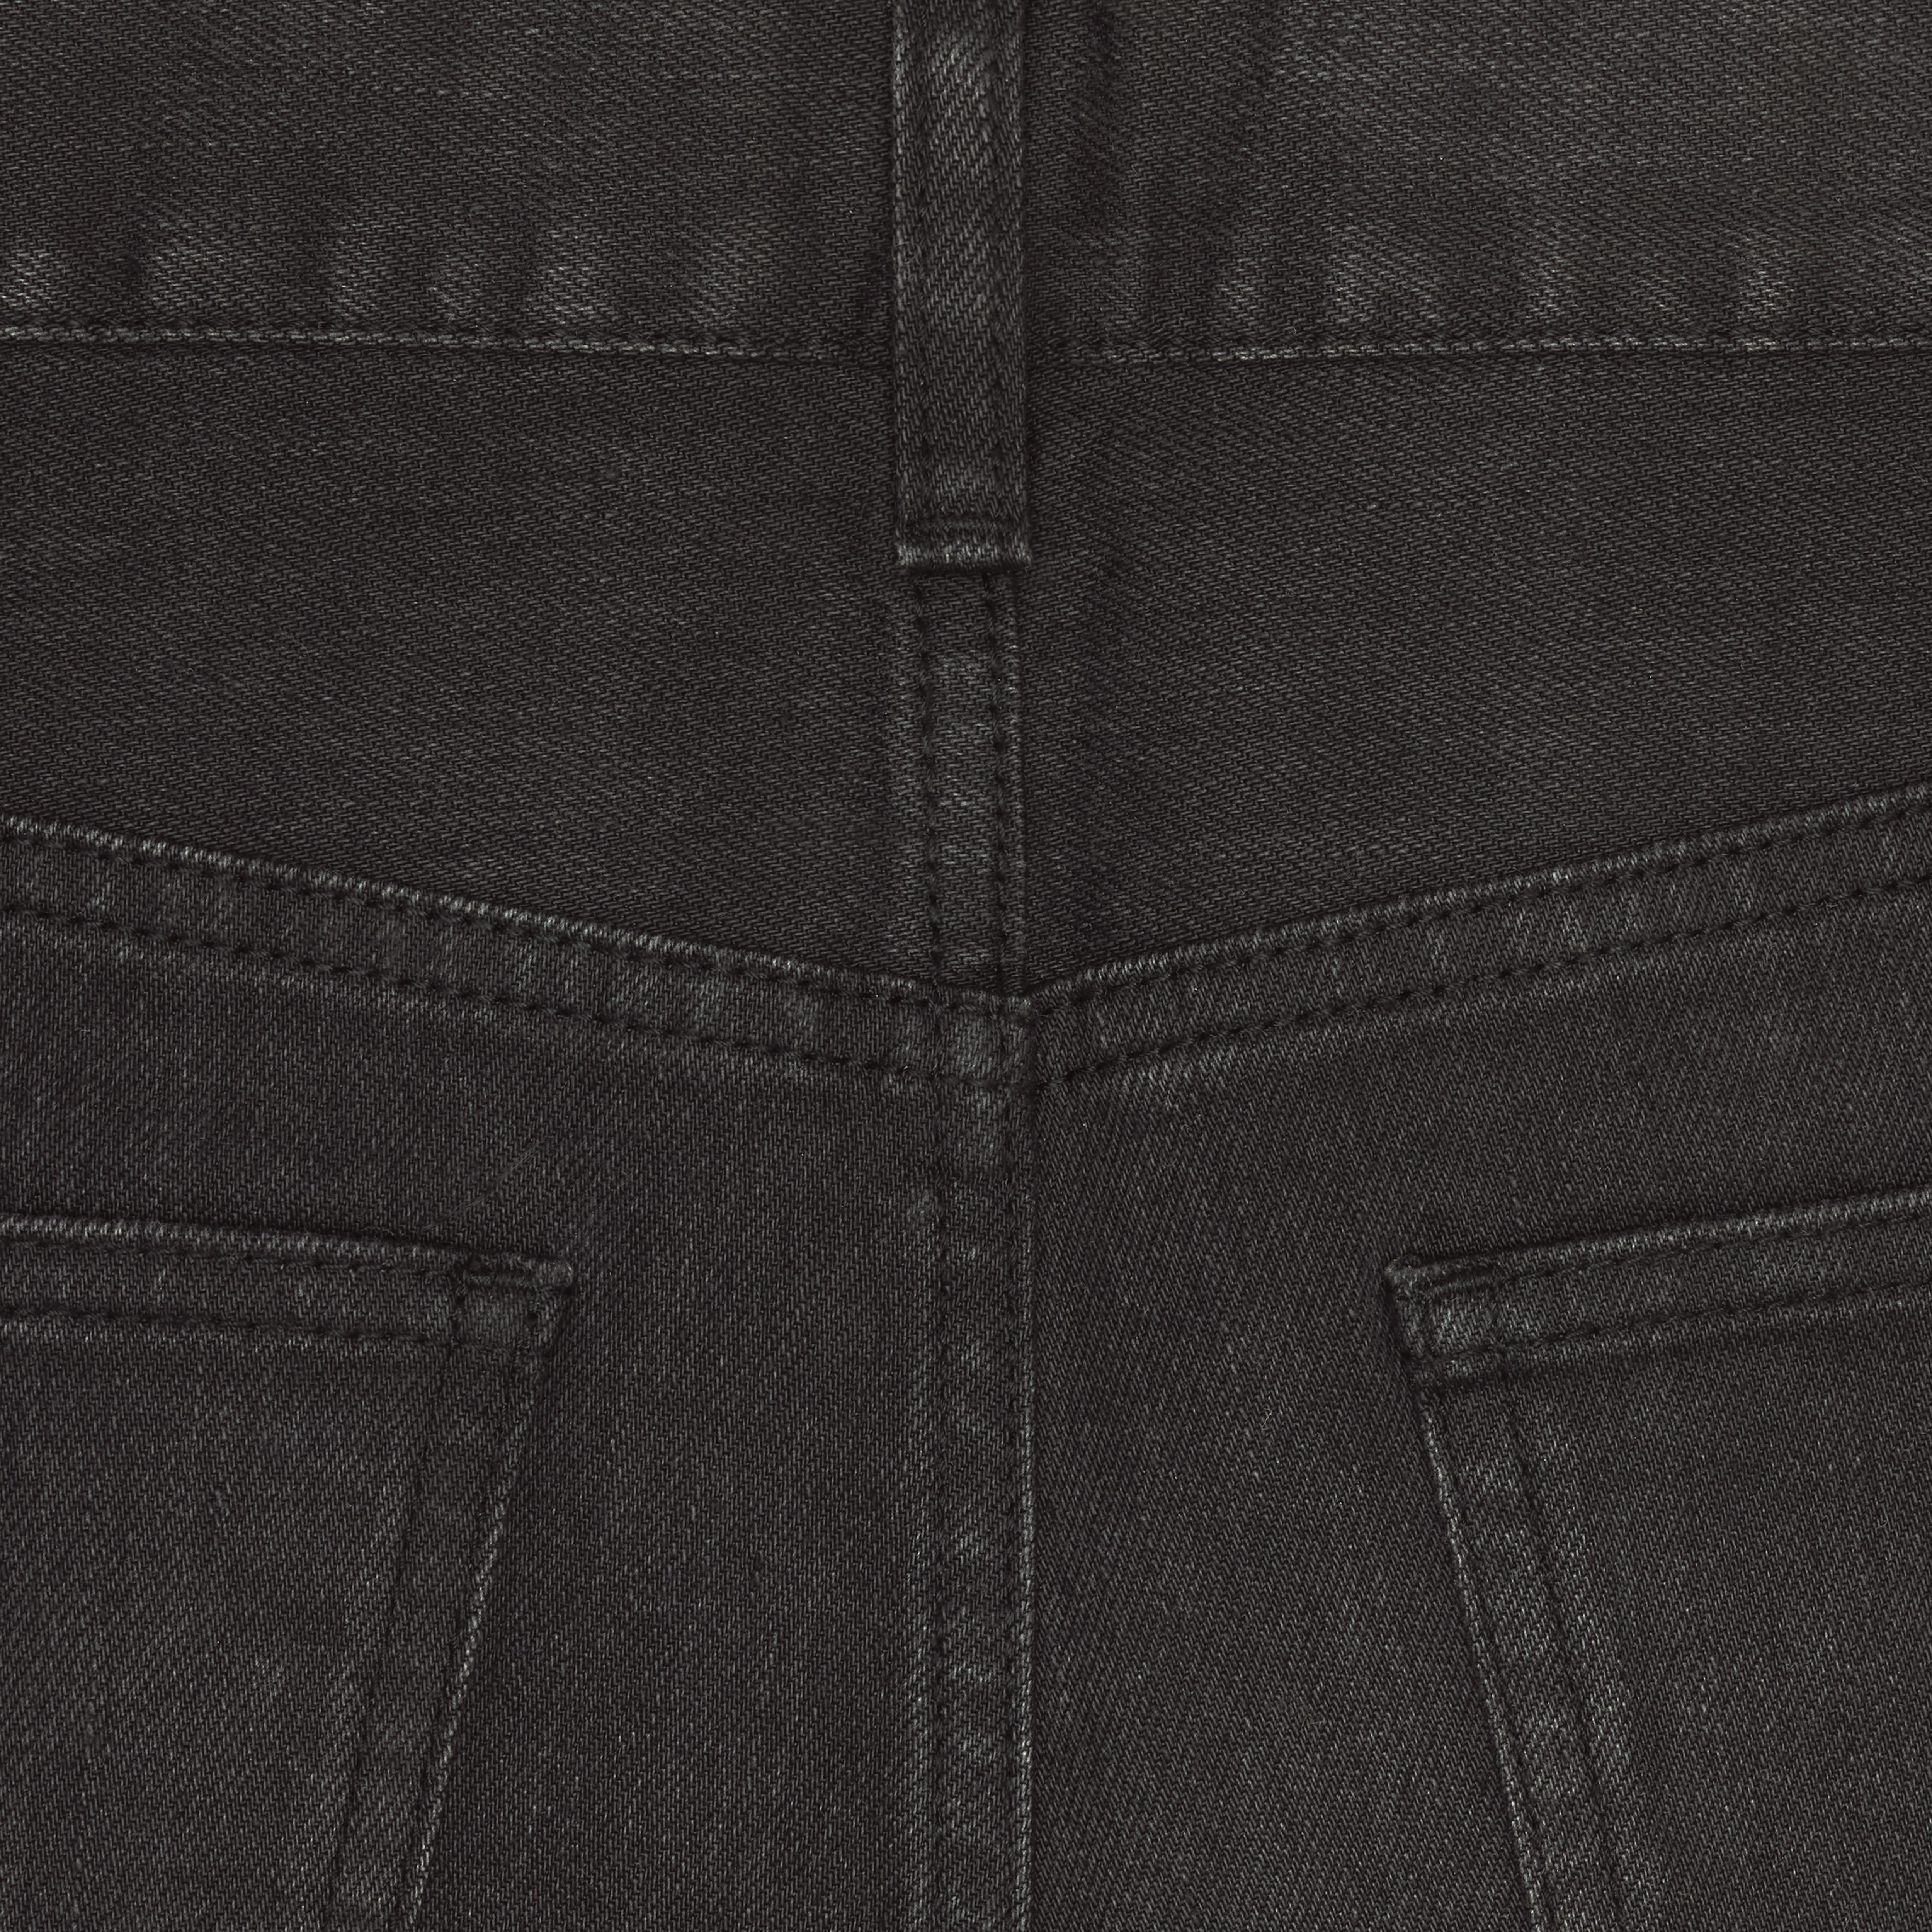 skinny jeans in black denim - 4